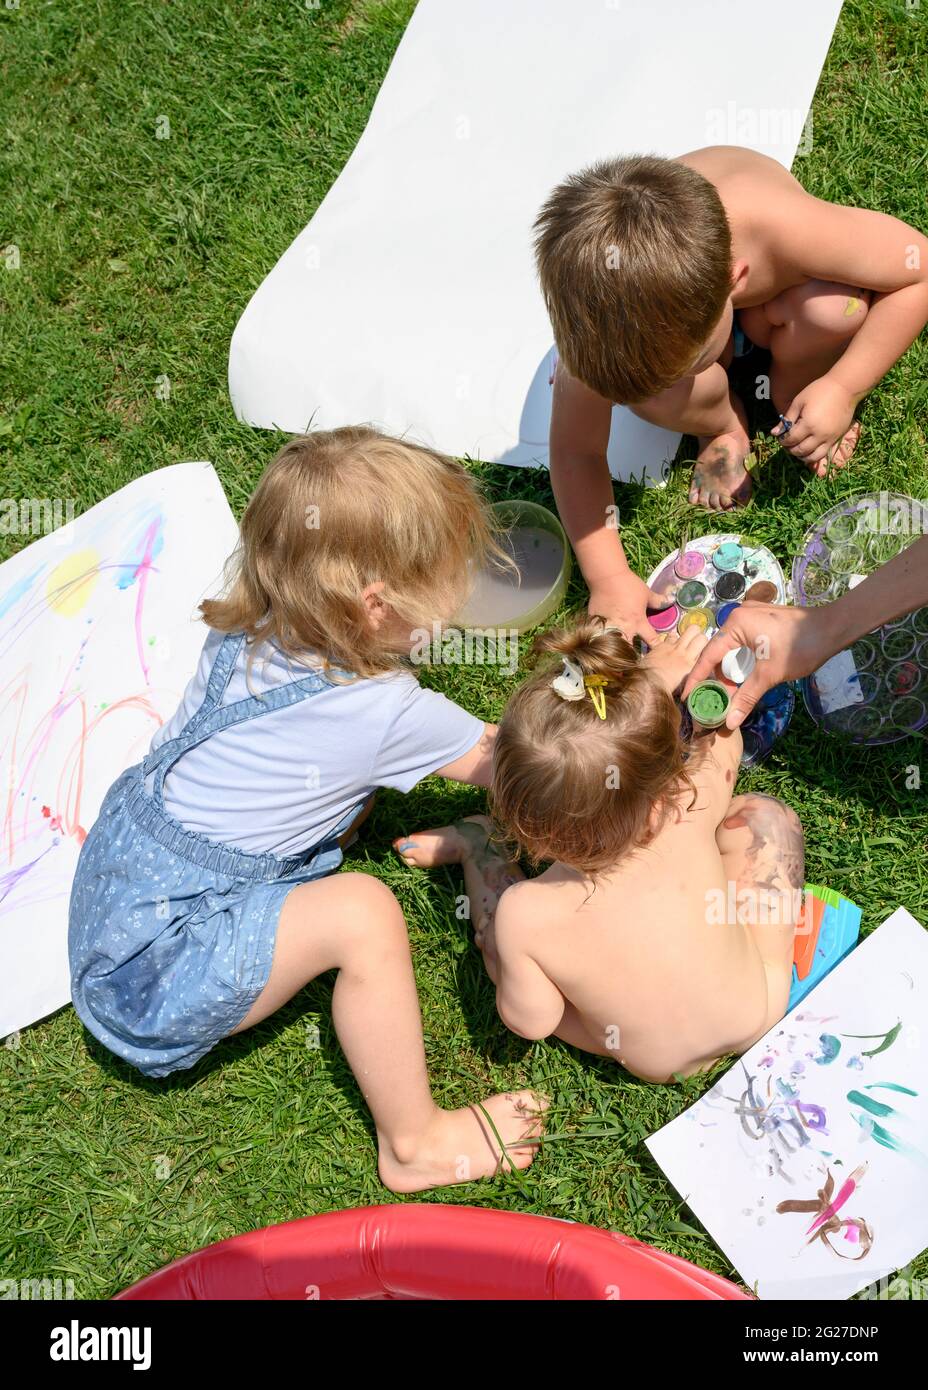 Les enfants sur la pelouse ensoleillée devant la maison peignent avec des peintures Banque D'Images